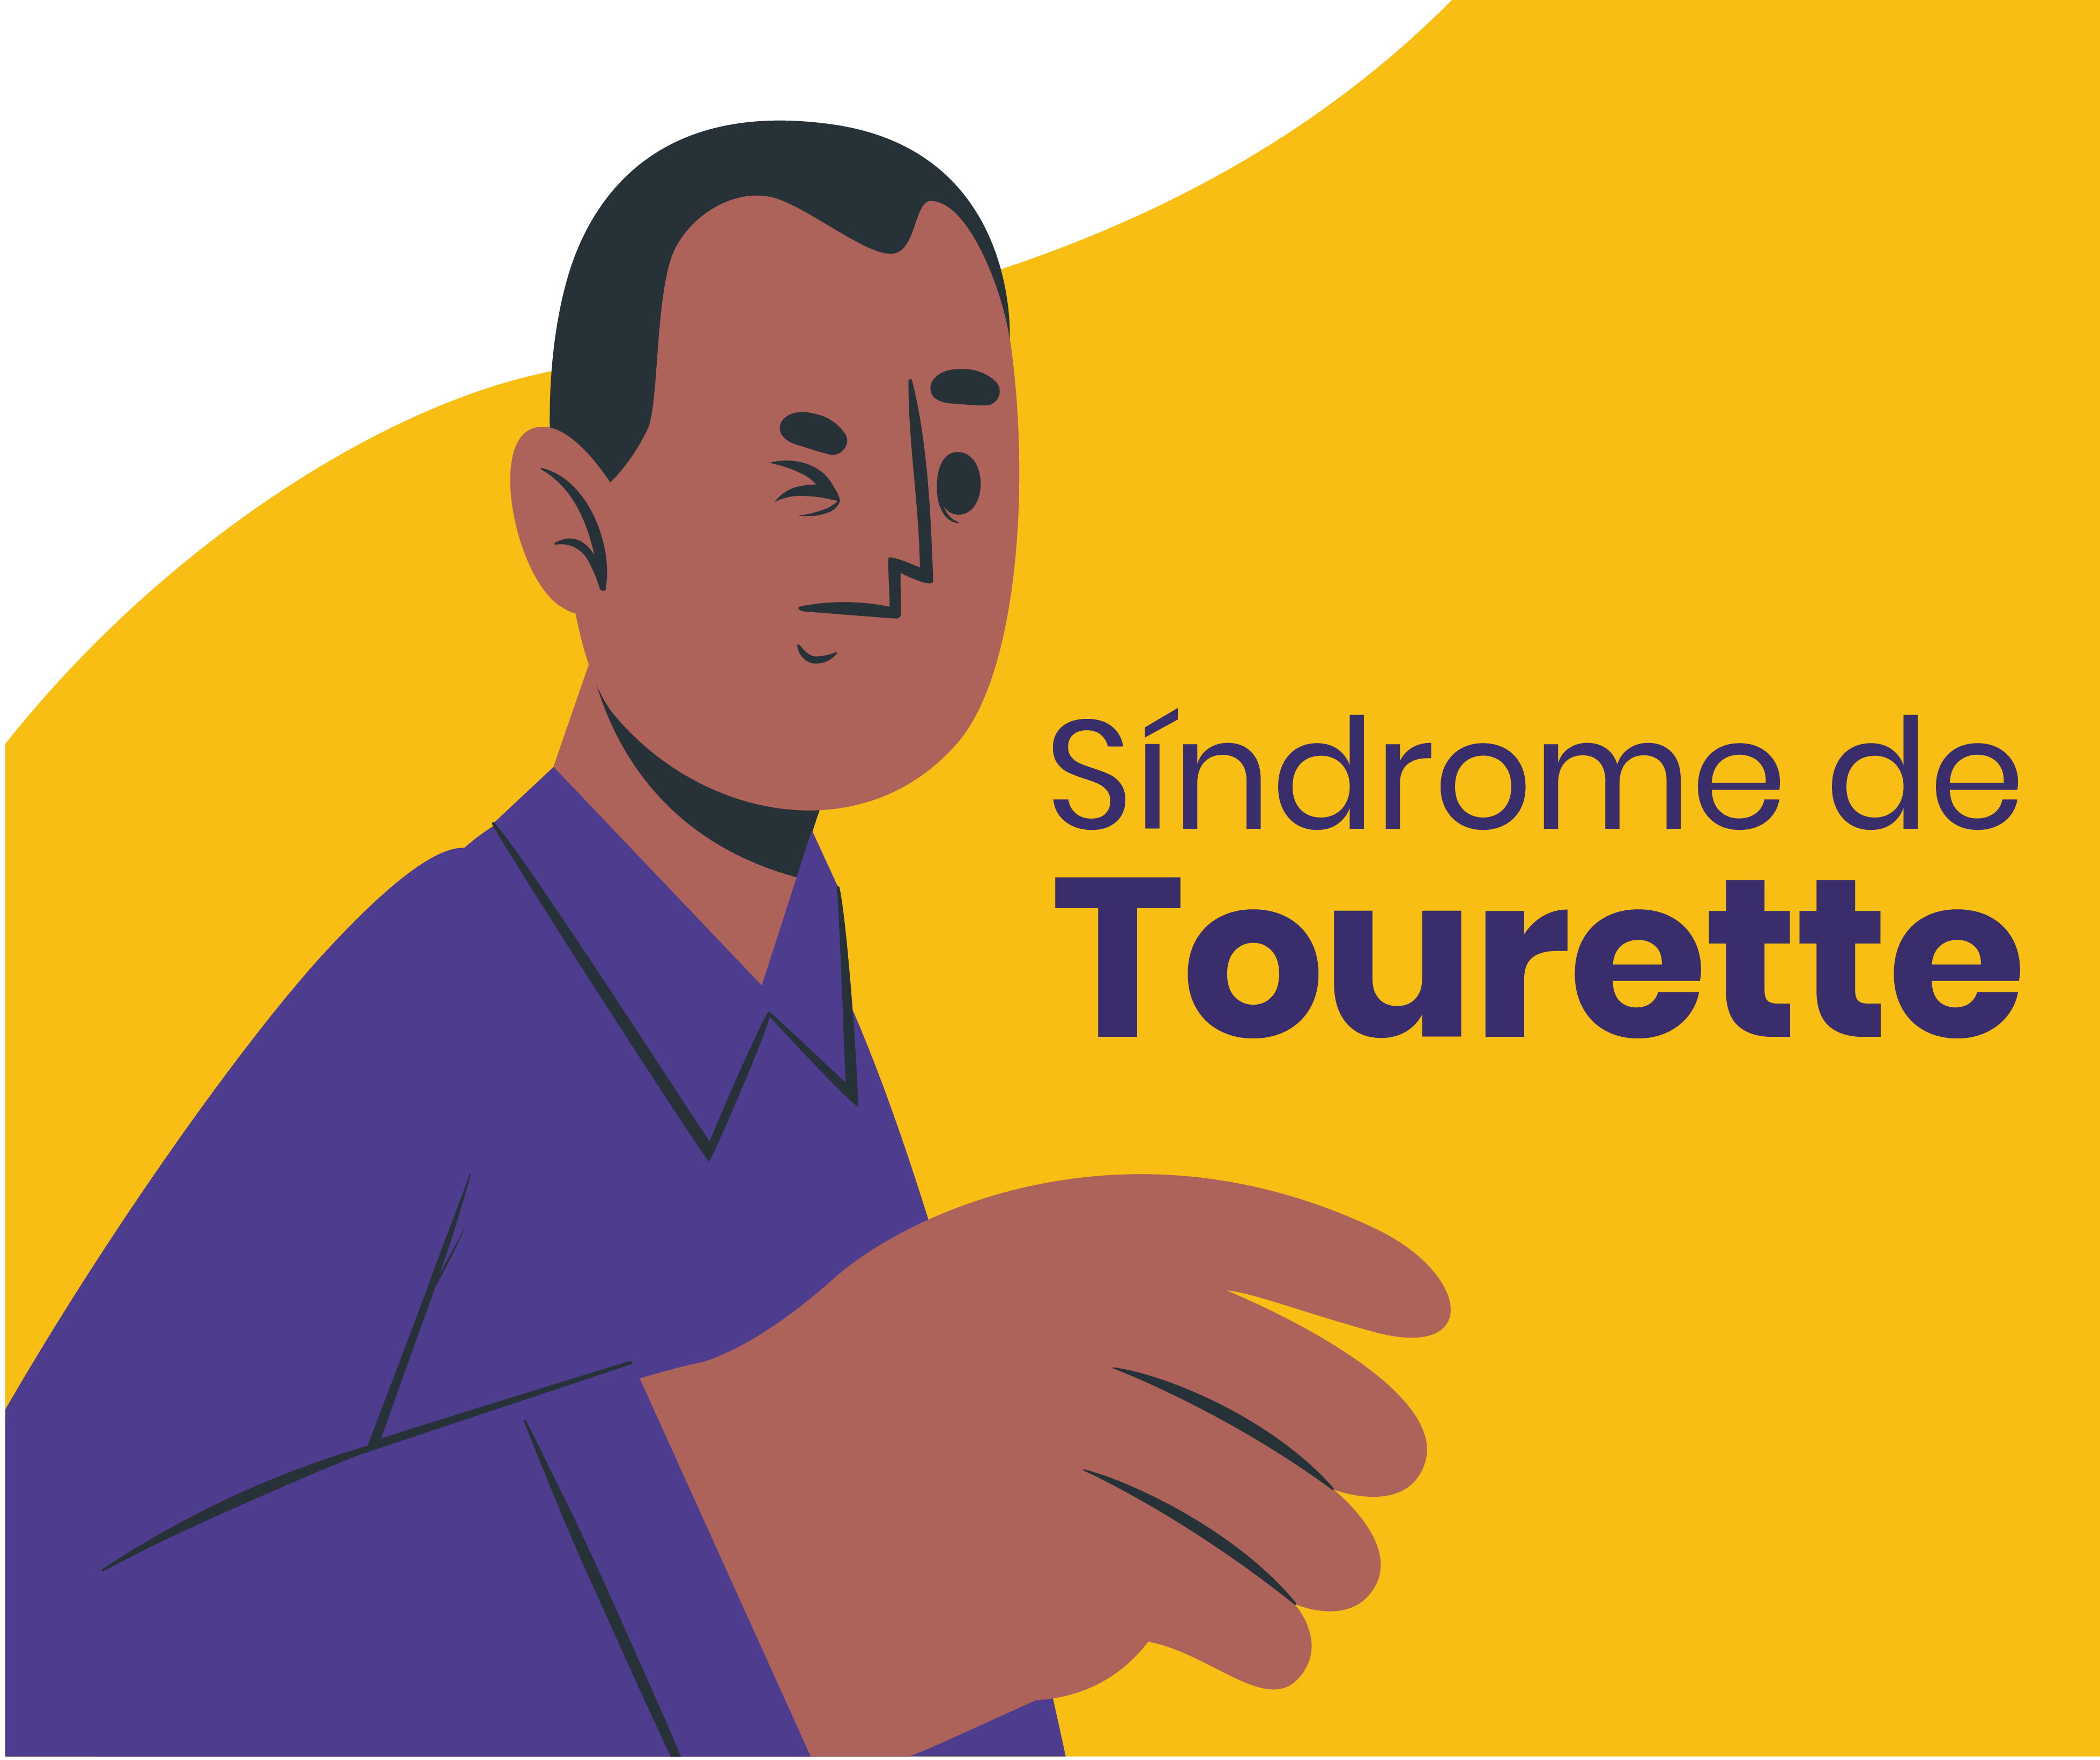 Sindrome-de-Tourette.png